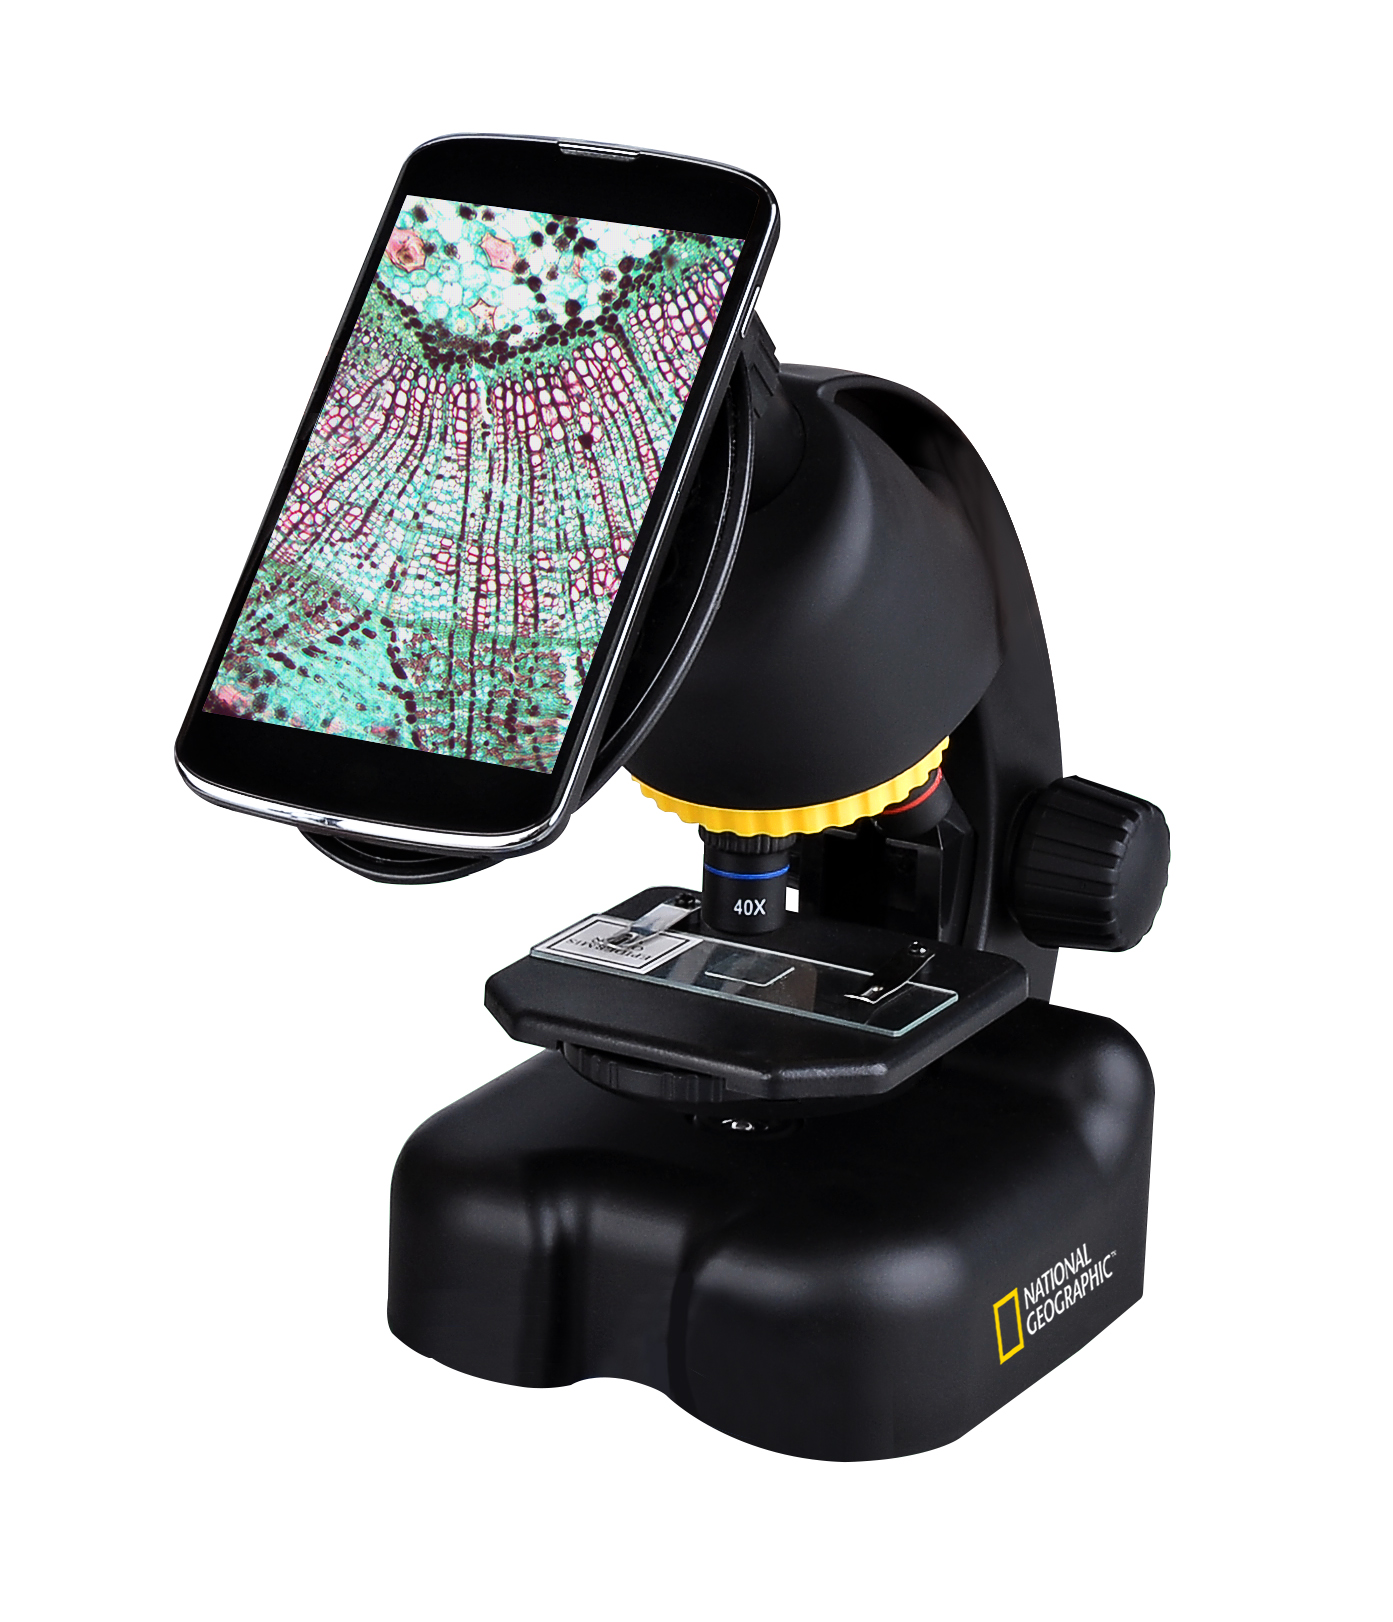 NATIONAL GEOGRAPHIC Telescopio compacto + microscopio con soporte para el Smartphone